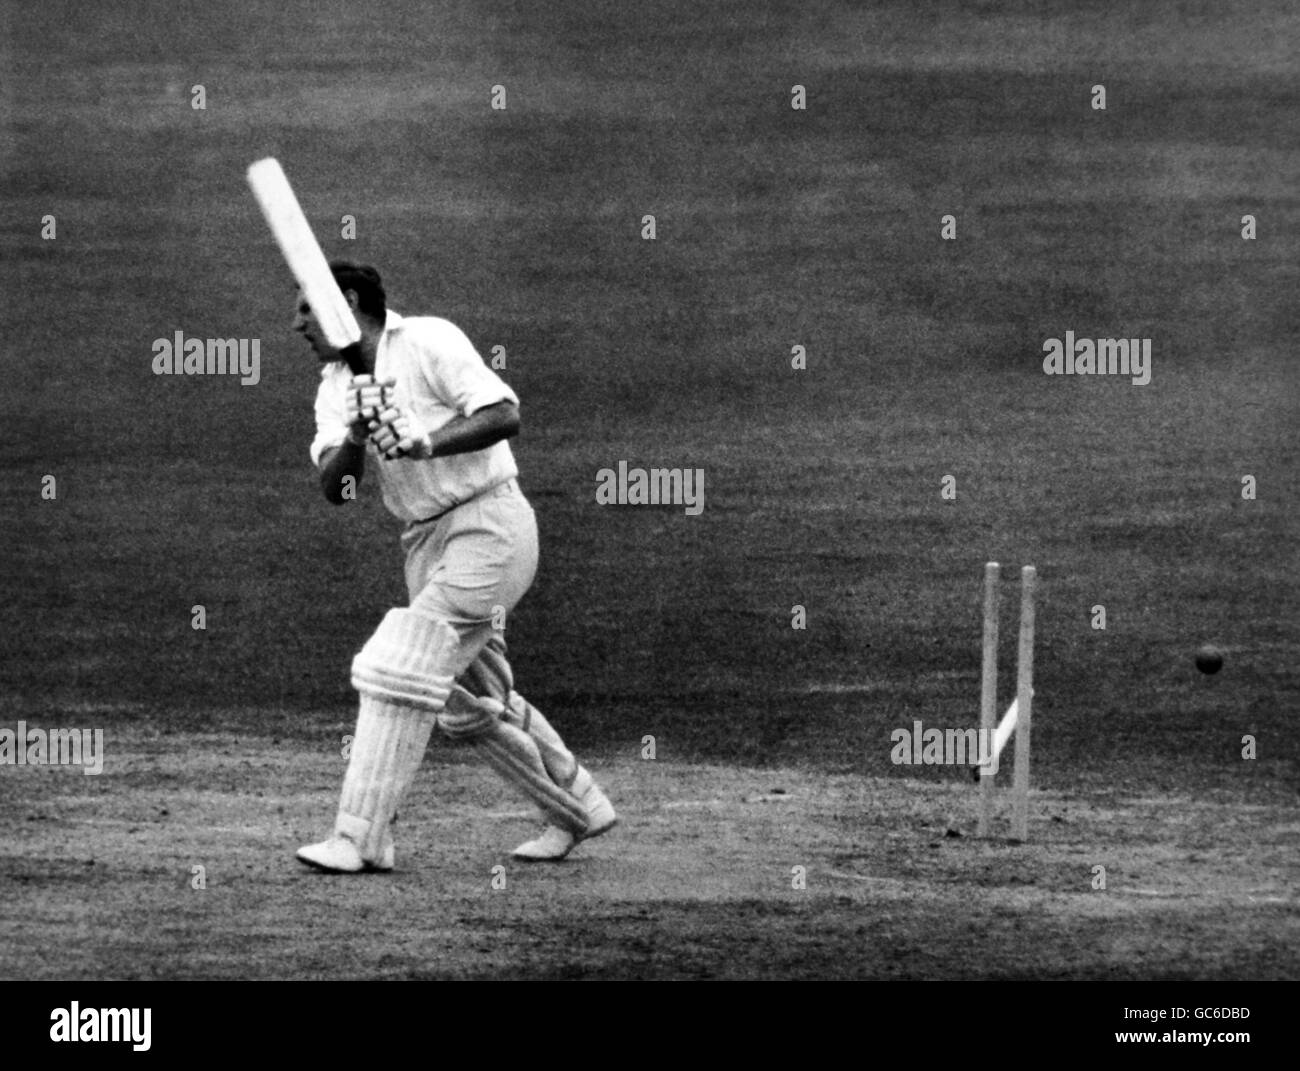 Cricket - Championnat du comté 1968 - troisième jour - Middlesex v Sussex - terrain de cricket de Lord'. J.M.Parks est sous l'égide de J.S.E.Price. Banque D'Images